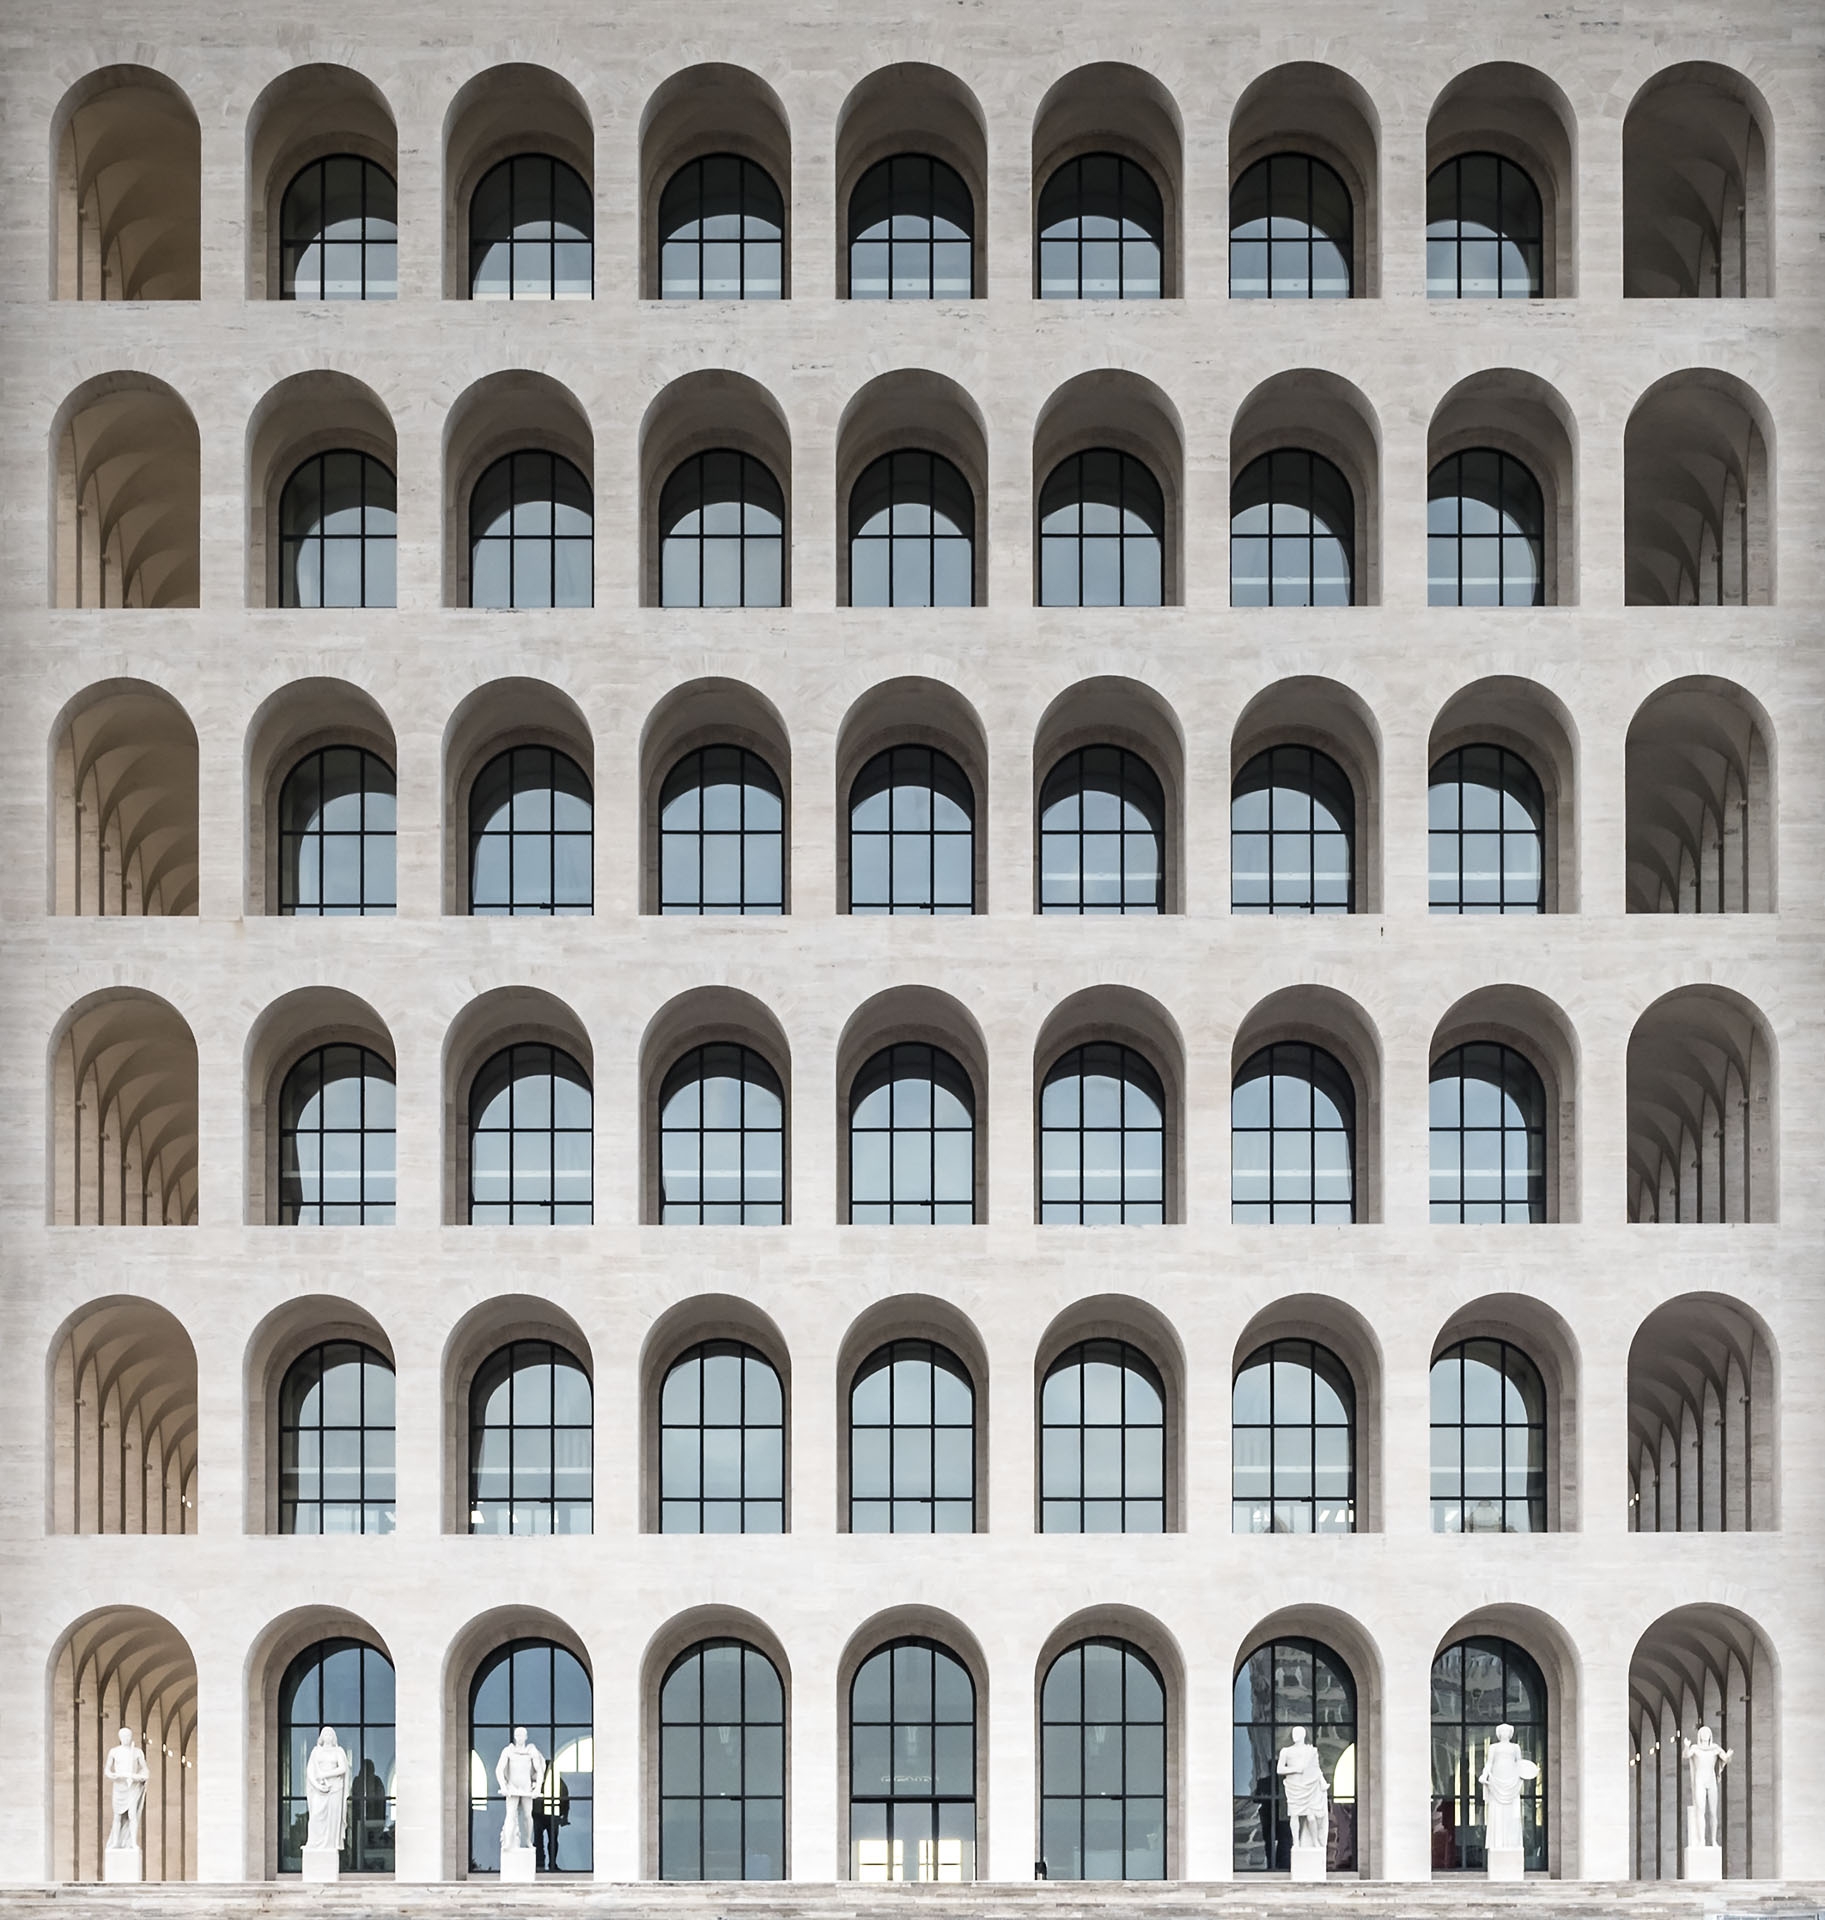 The Palazzo della Civilta Italiana, aka Square Colosseum, Rome, Italy